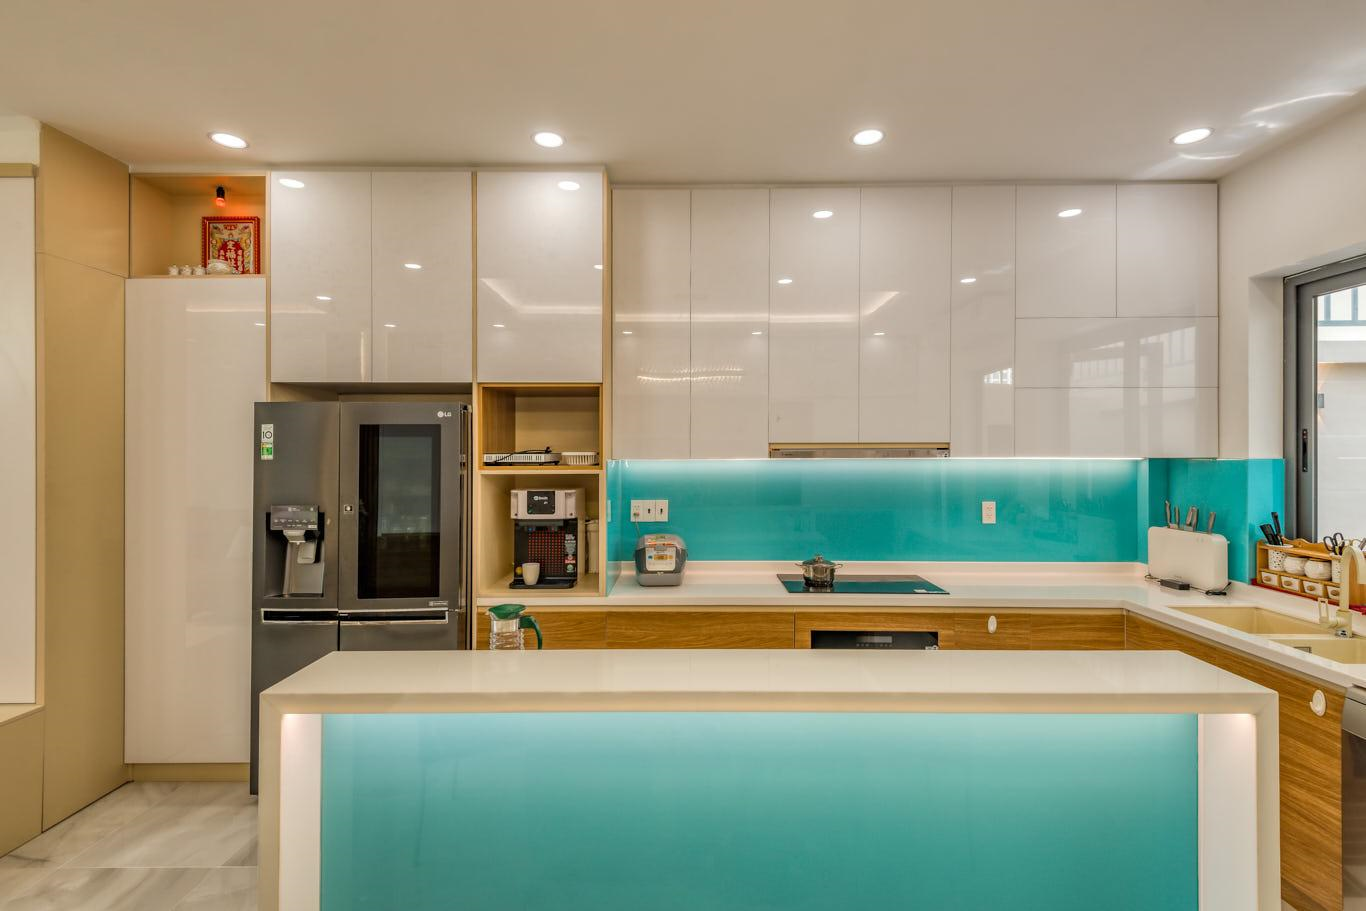 Bếp sử dụng gam màu đơn sắc kết hợp hài hòa với tông màu hiện đại của các thiết bị nhà bếp